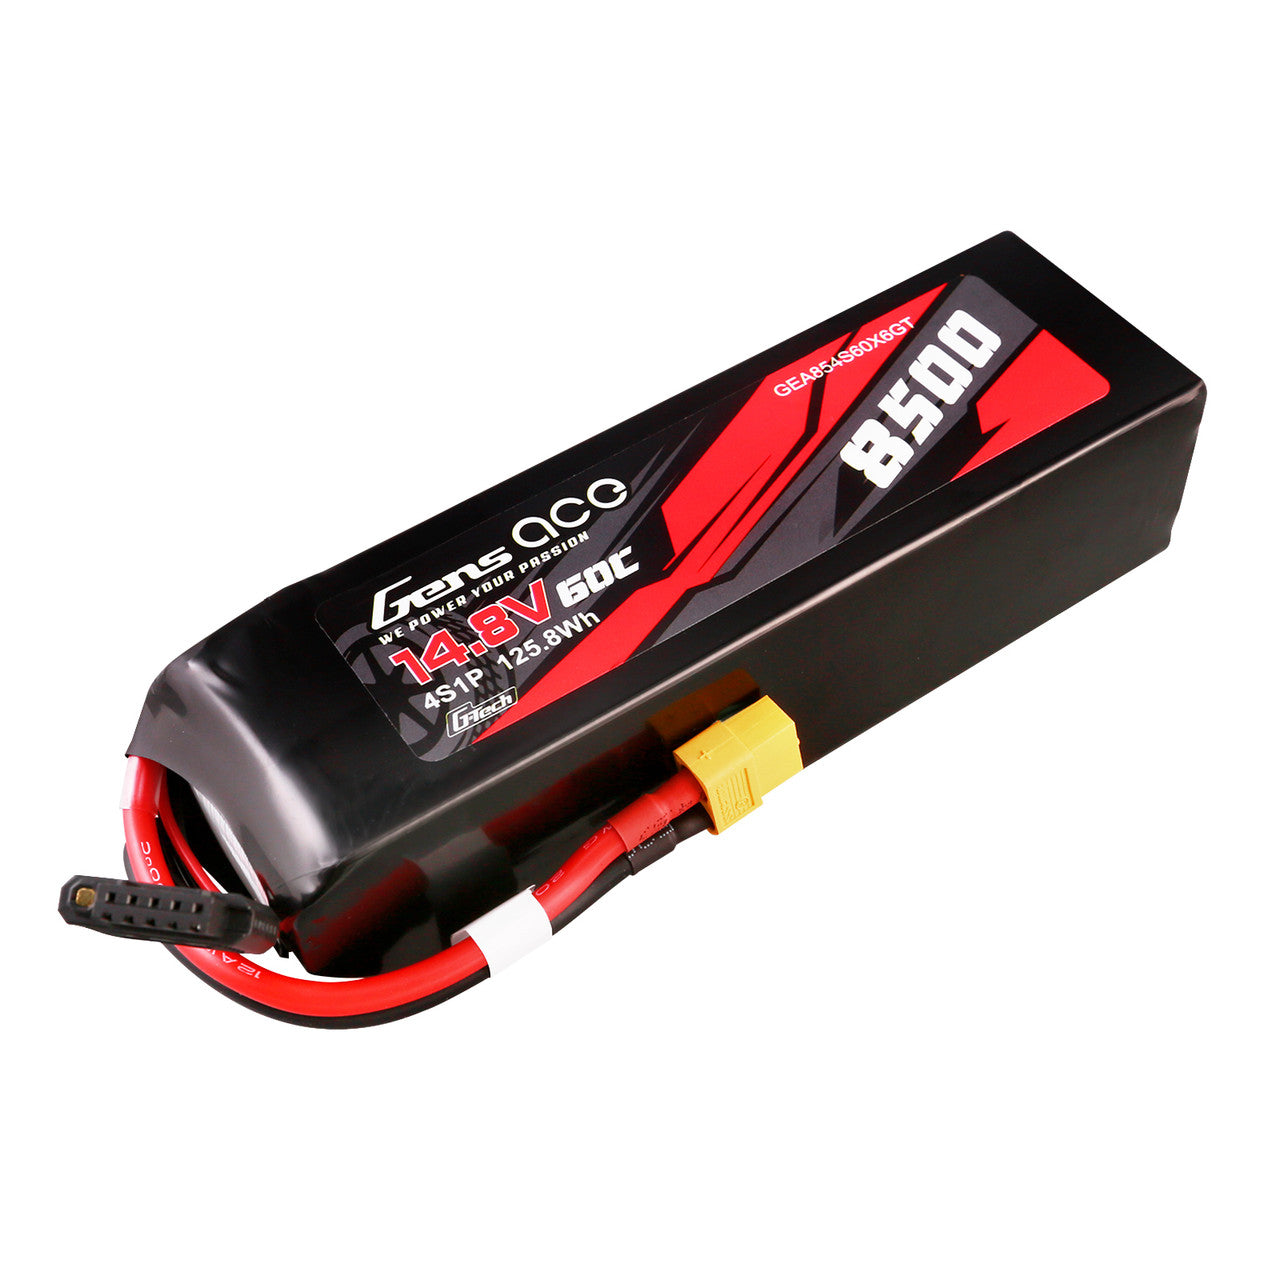 GEA854S60X6GT Gens Ace 14,8 V 60C 4S 8500mAh G-Tech Lipo batería con enchufe XT60 para coche Xmaxx 8S